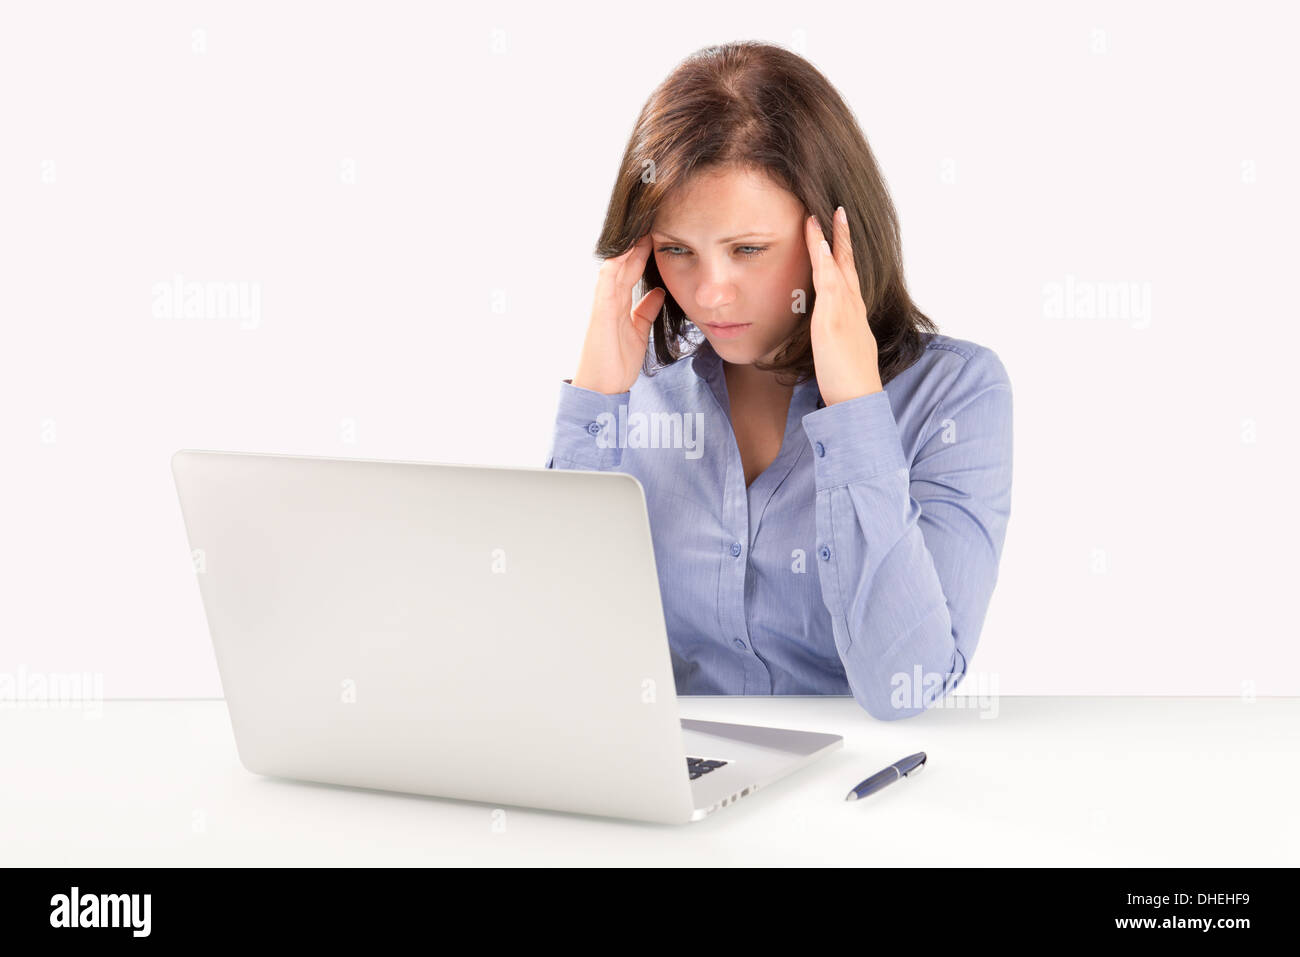 Business-Frau sitzt vor einem modernen Laptop und Hand in Hand hinter ihrem Kopf, Business-Konzept Stockfoto